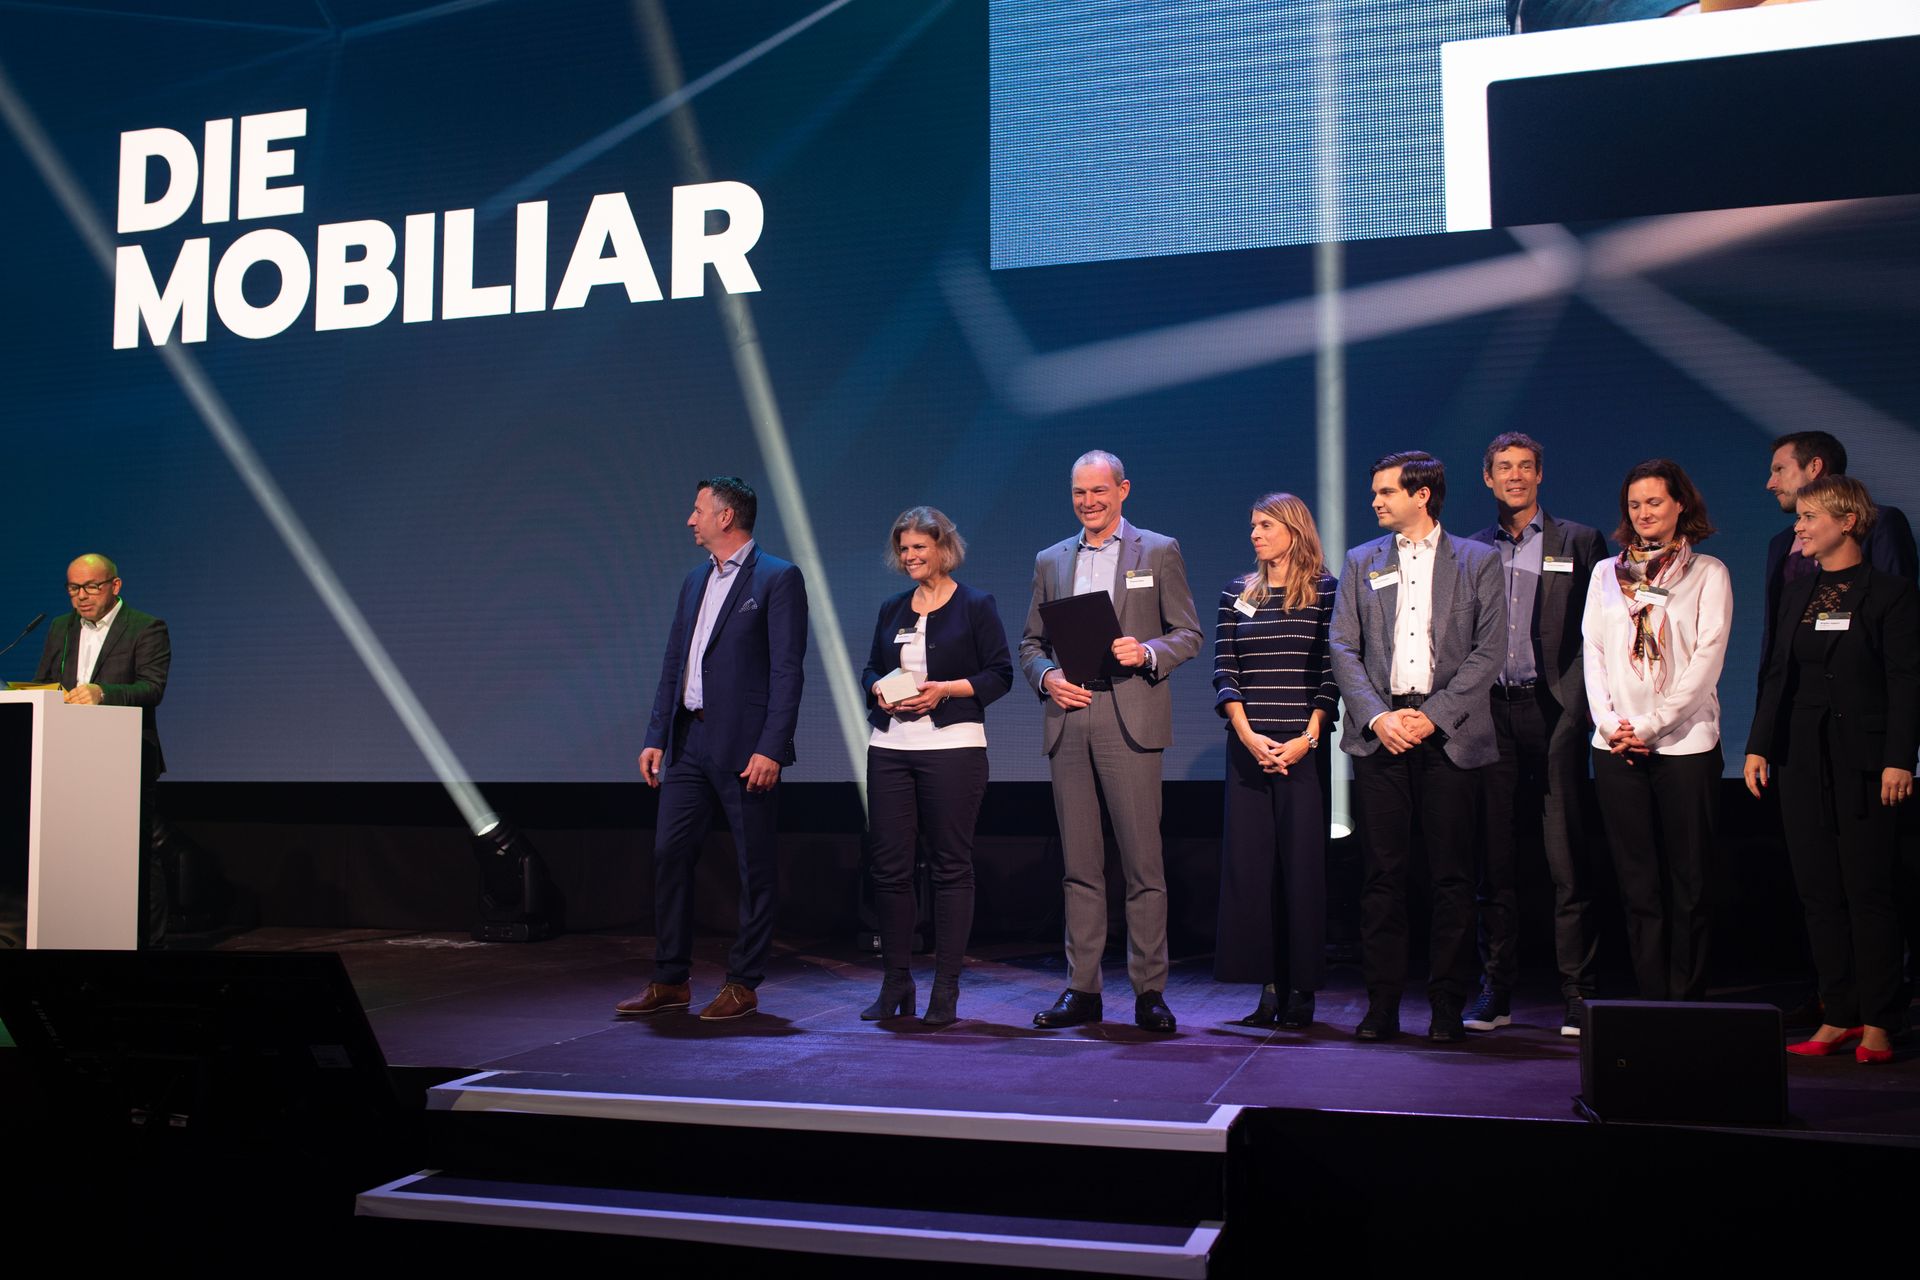 Spoločnosť "La Mobiliare" získala ocenenie "Digital Excellence PMI" na švajčiarskom "Digital Economy Award"